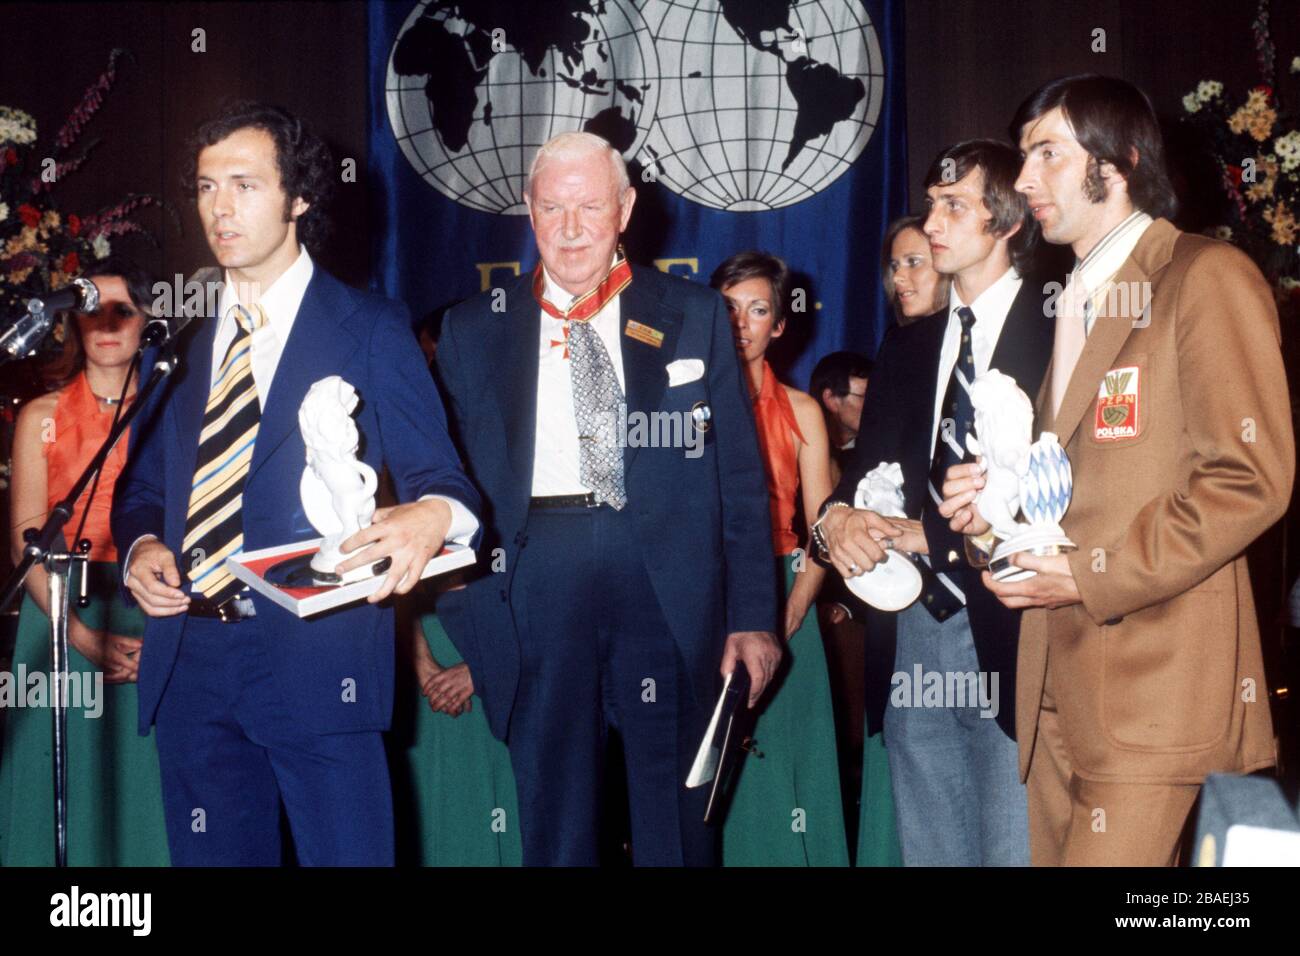 El capitán Franz Beckenbauer (l) de Alemania Occidental hace un discurso después de las presentaciones en el banquete de la victoria, celebrado en el hotel Hilton de Munich, visto por el presidente de la FIFA Sir Stanley Rous (segundo l), el holandés Johan Cruyff (segundo r) y el polaco Kazimierz Deyna (r) Foto de stock